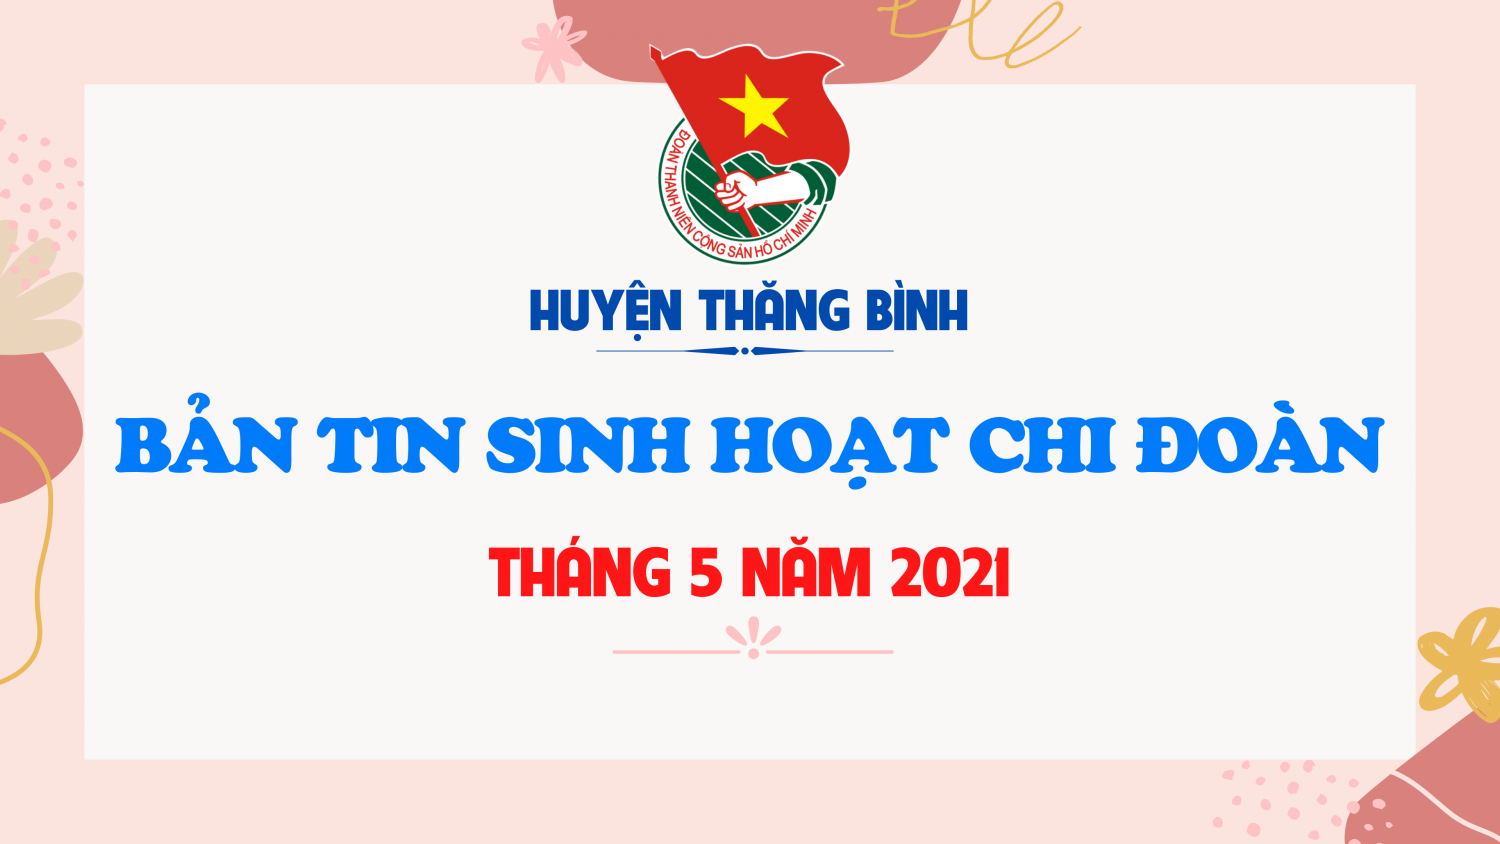 BẢN TIN SINH HOẠT CHI ĐOÀN THÁNG 5 NĂM 2021